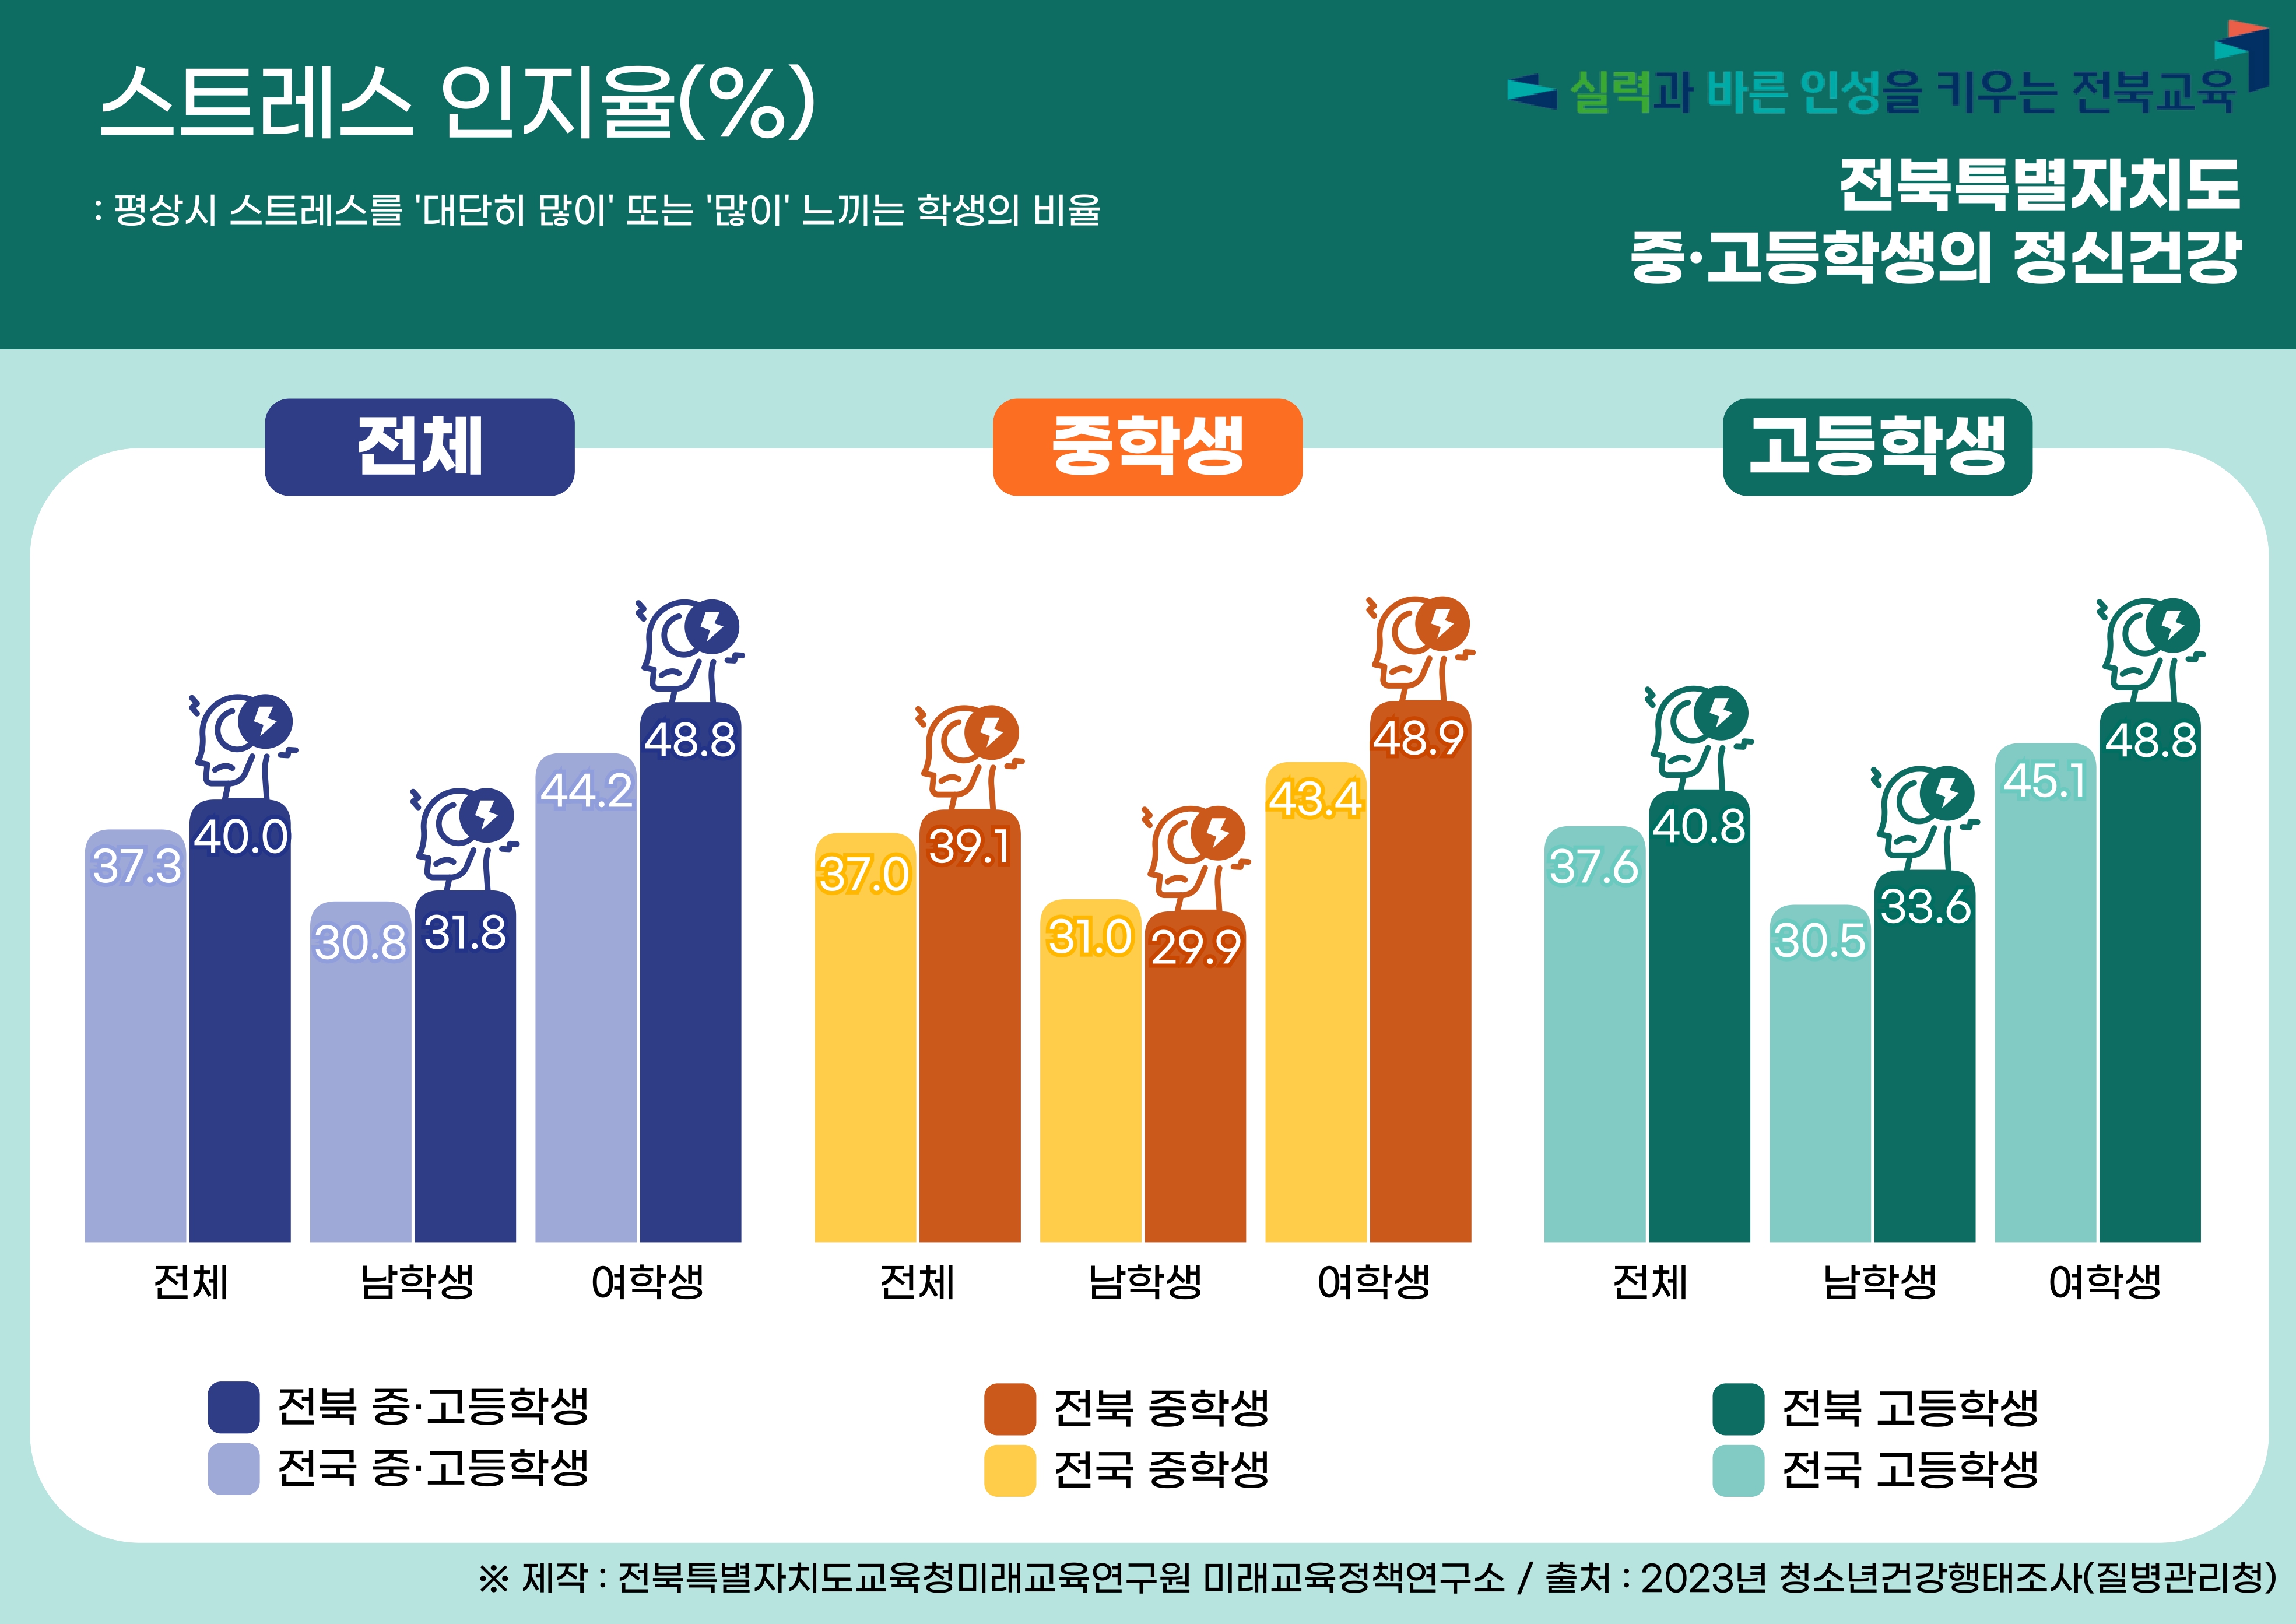 2023년 전북특별자치도 청소년 건강행태 : 정신건강